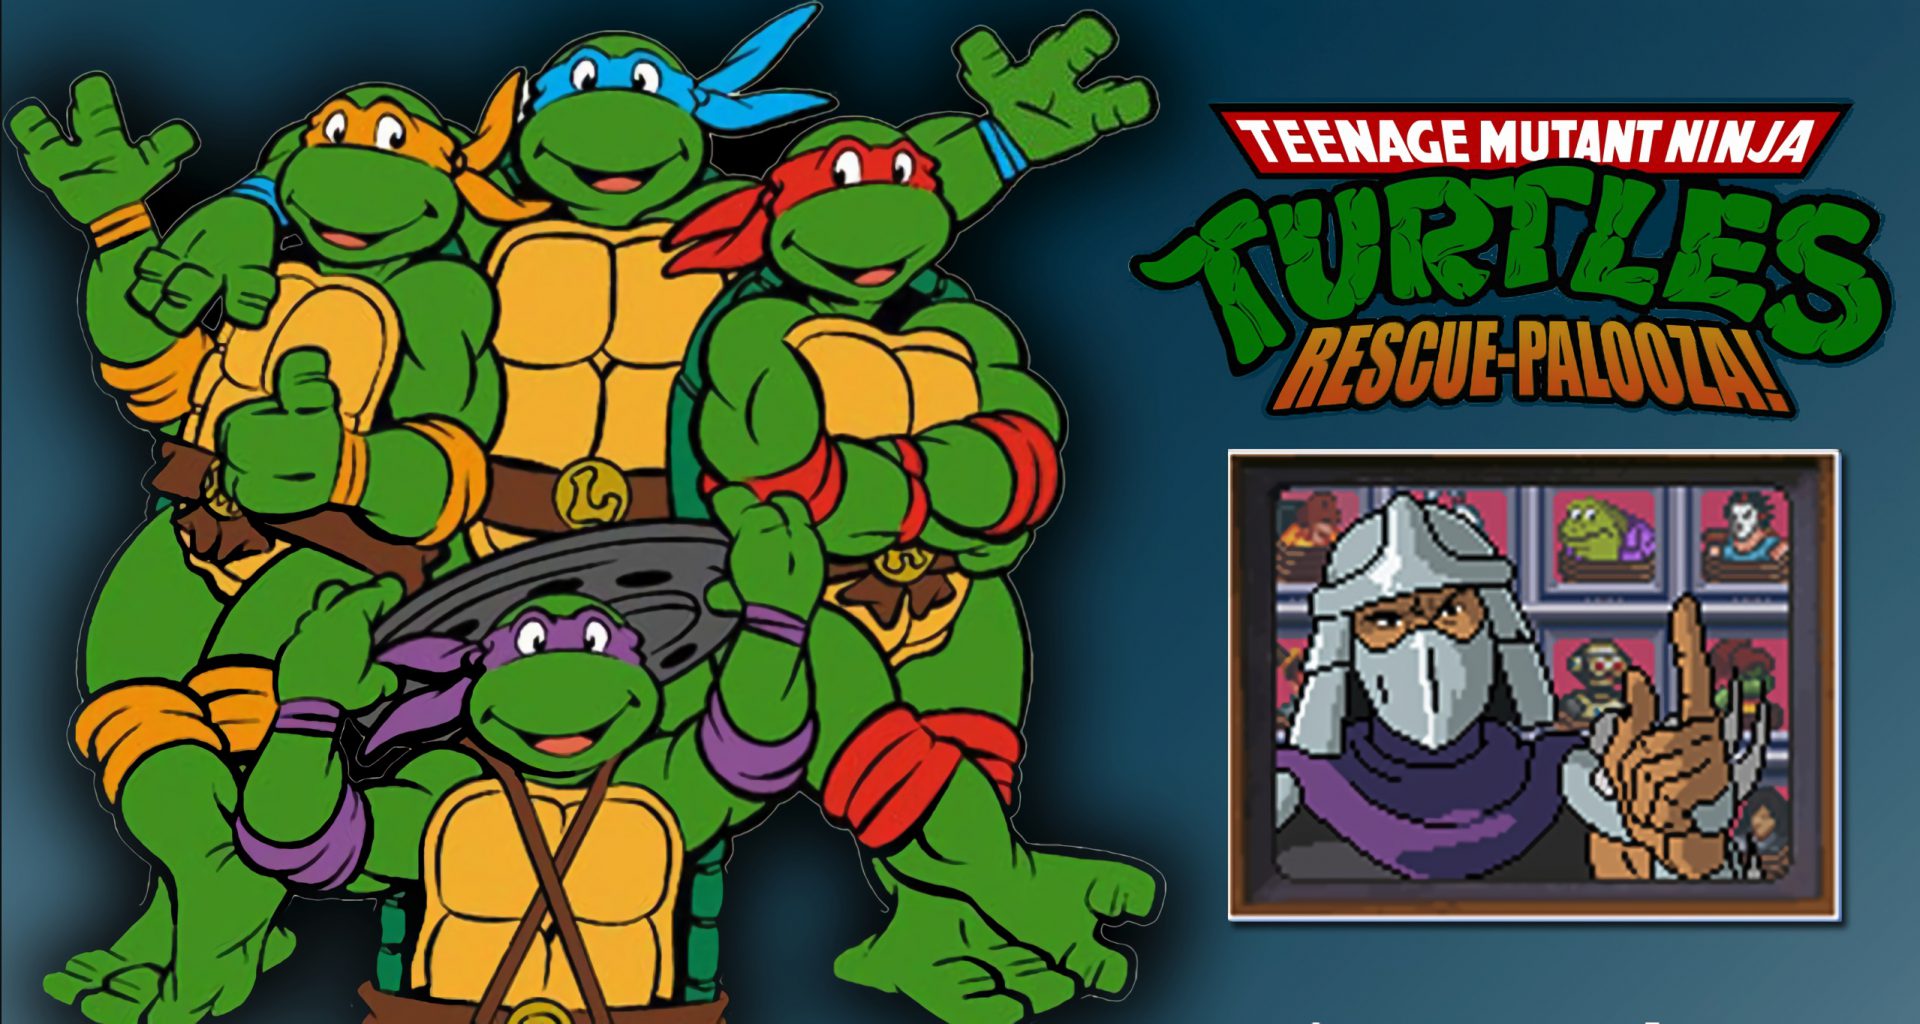 Игр черепашки 1. Teenage Mutant Ninja Turtles: Rescue - Palooza!. Черепашки ниндзя Rescue Palooza. TMNT 1989. Teenage Mutant Ninja Turtles 1989 обложка.